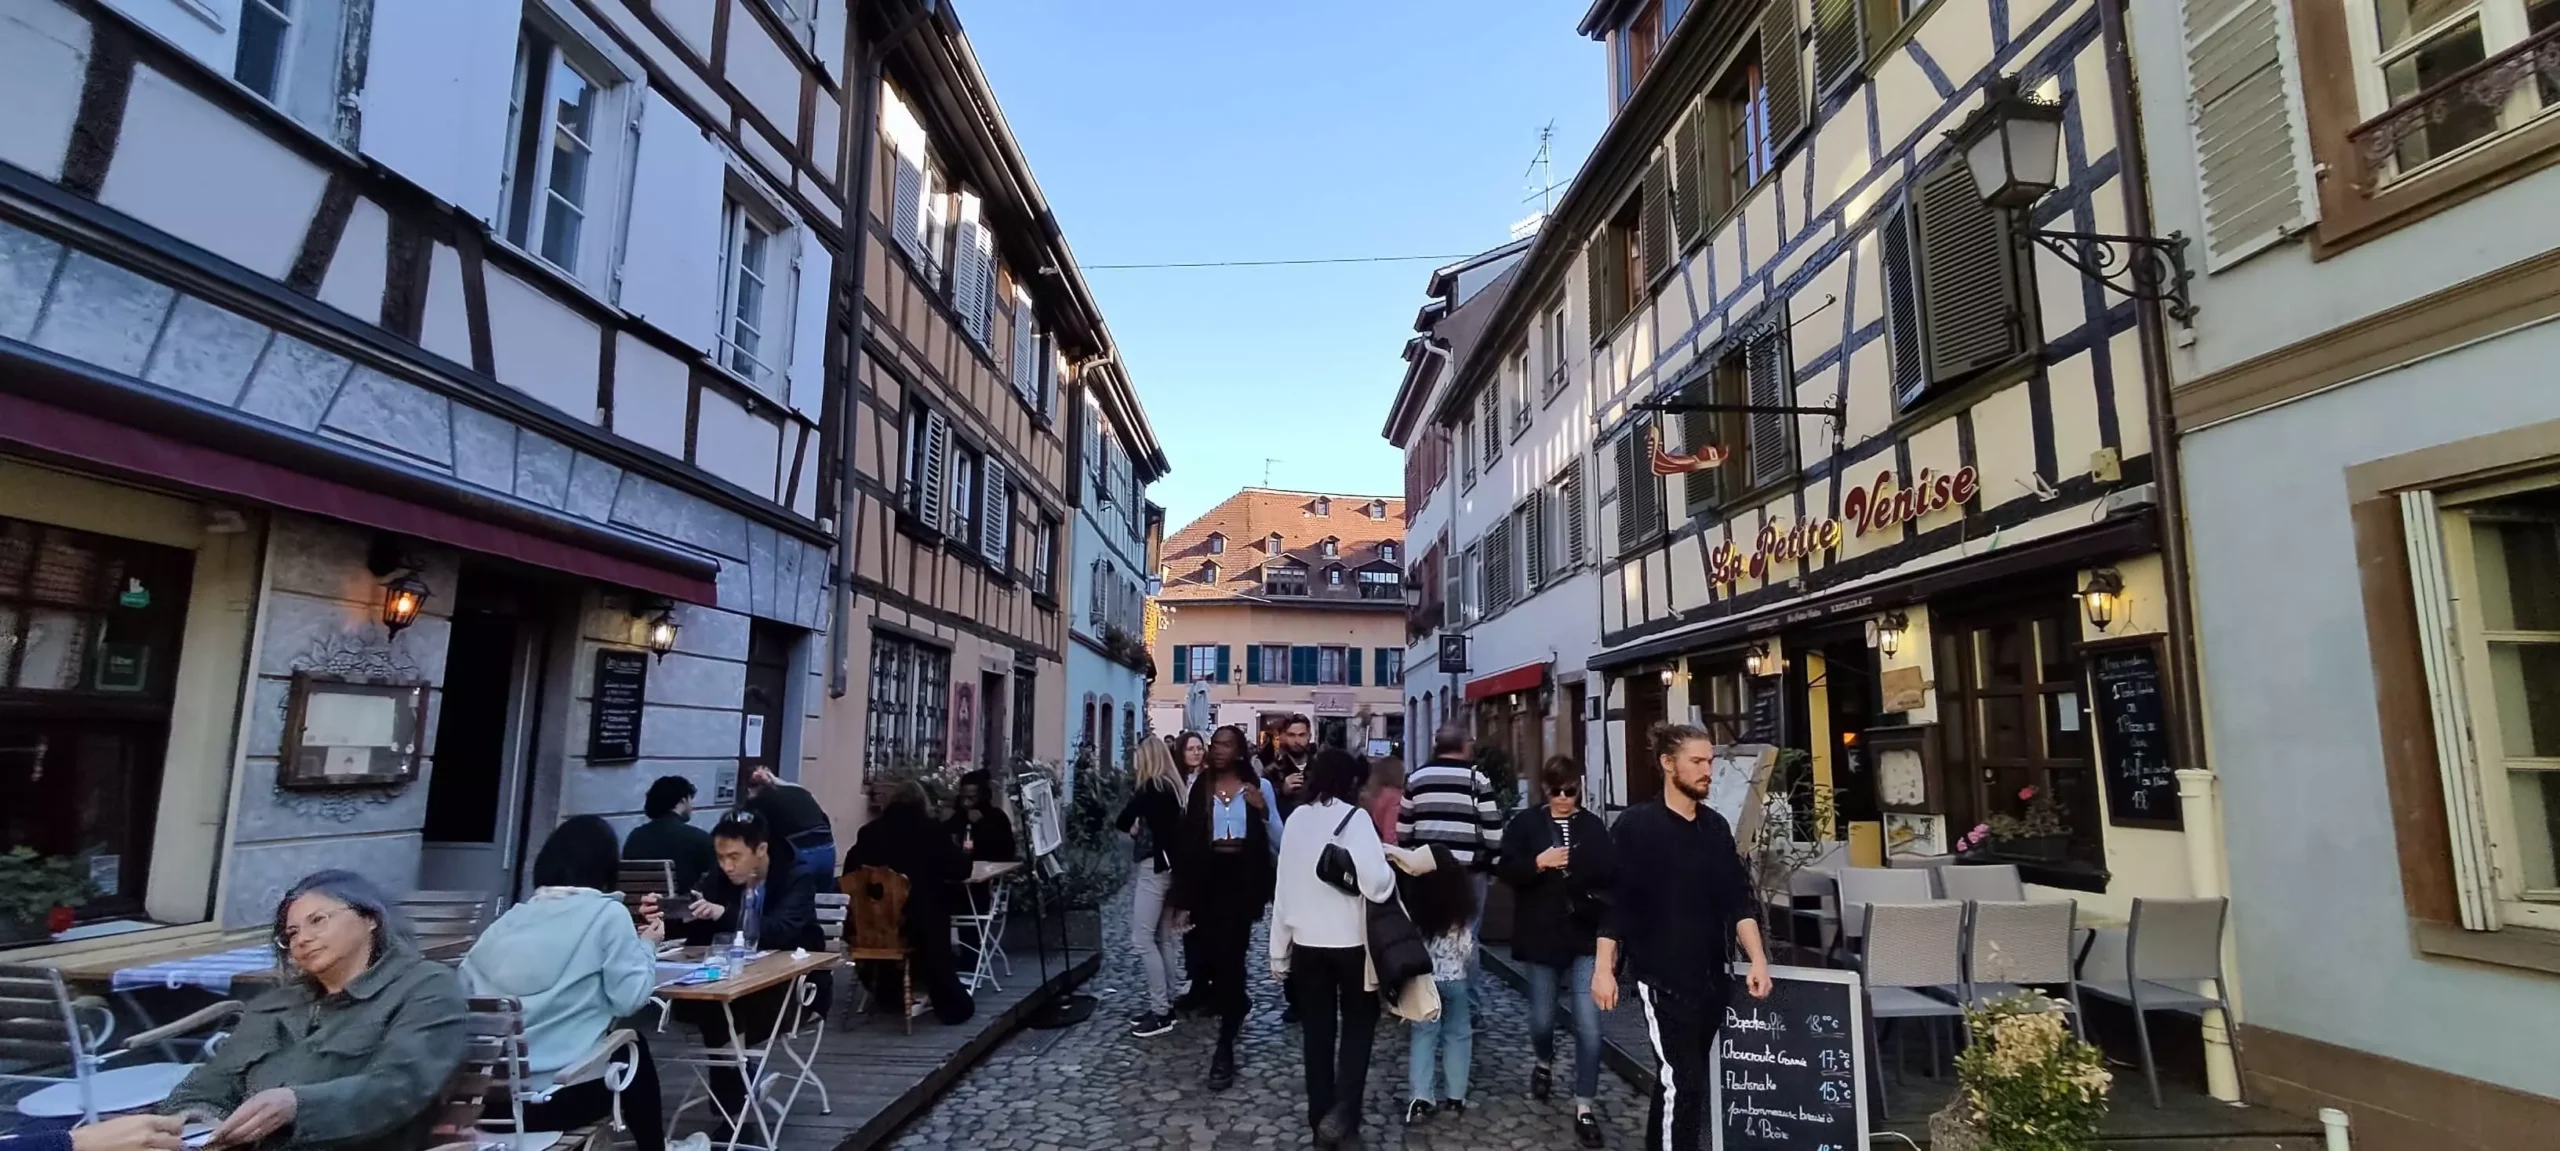 Ταξίδι στο Στρασβούργο στην πανέμορφη Αλσατία